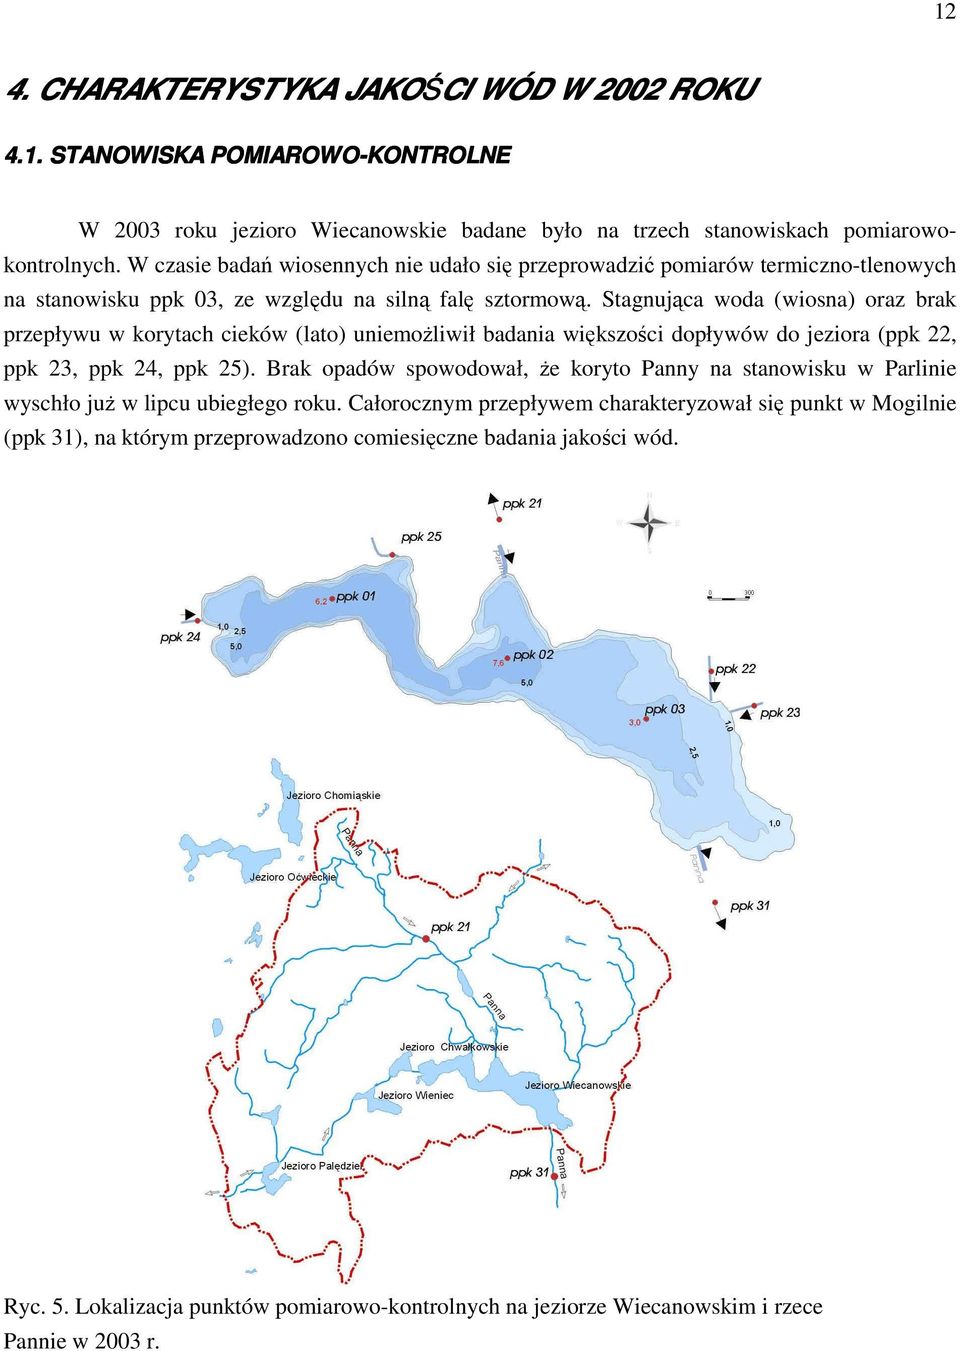 Stagnująca woda (wiosna) oraz brak przepływu w korytach cieków (lato) uniemoŝliwił badania większości dopływów do jeziora (ppk 22, ppk 23, ppk 24, ppk 25).